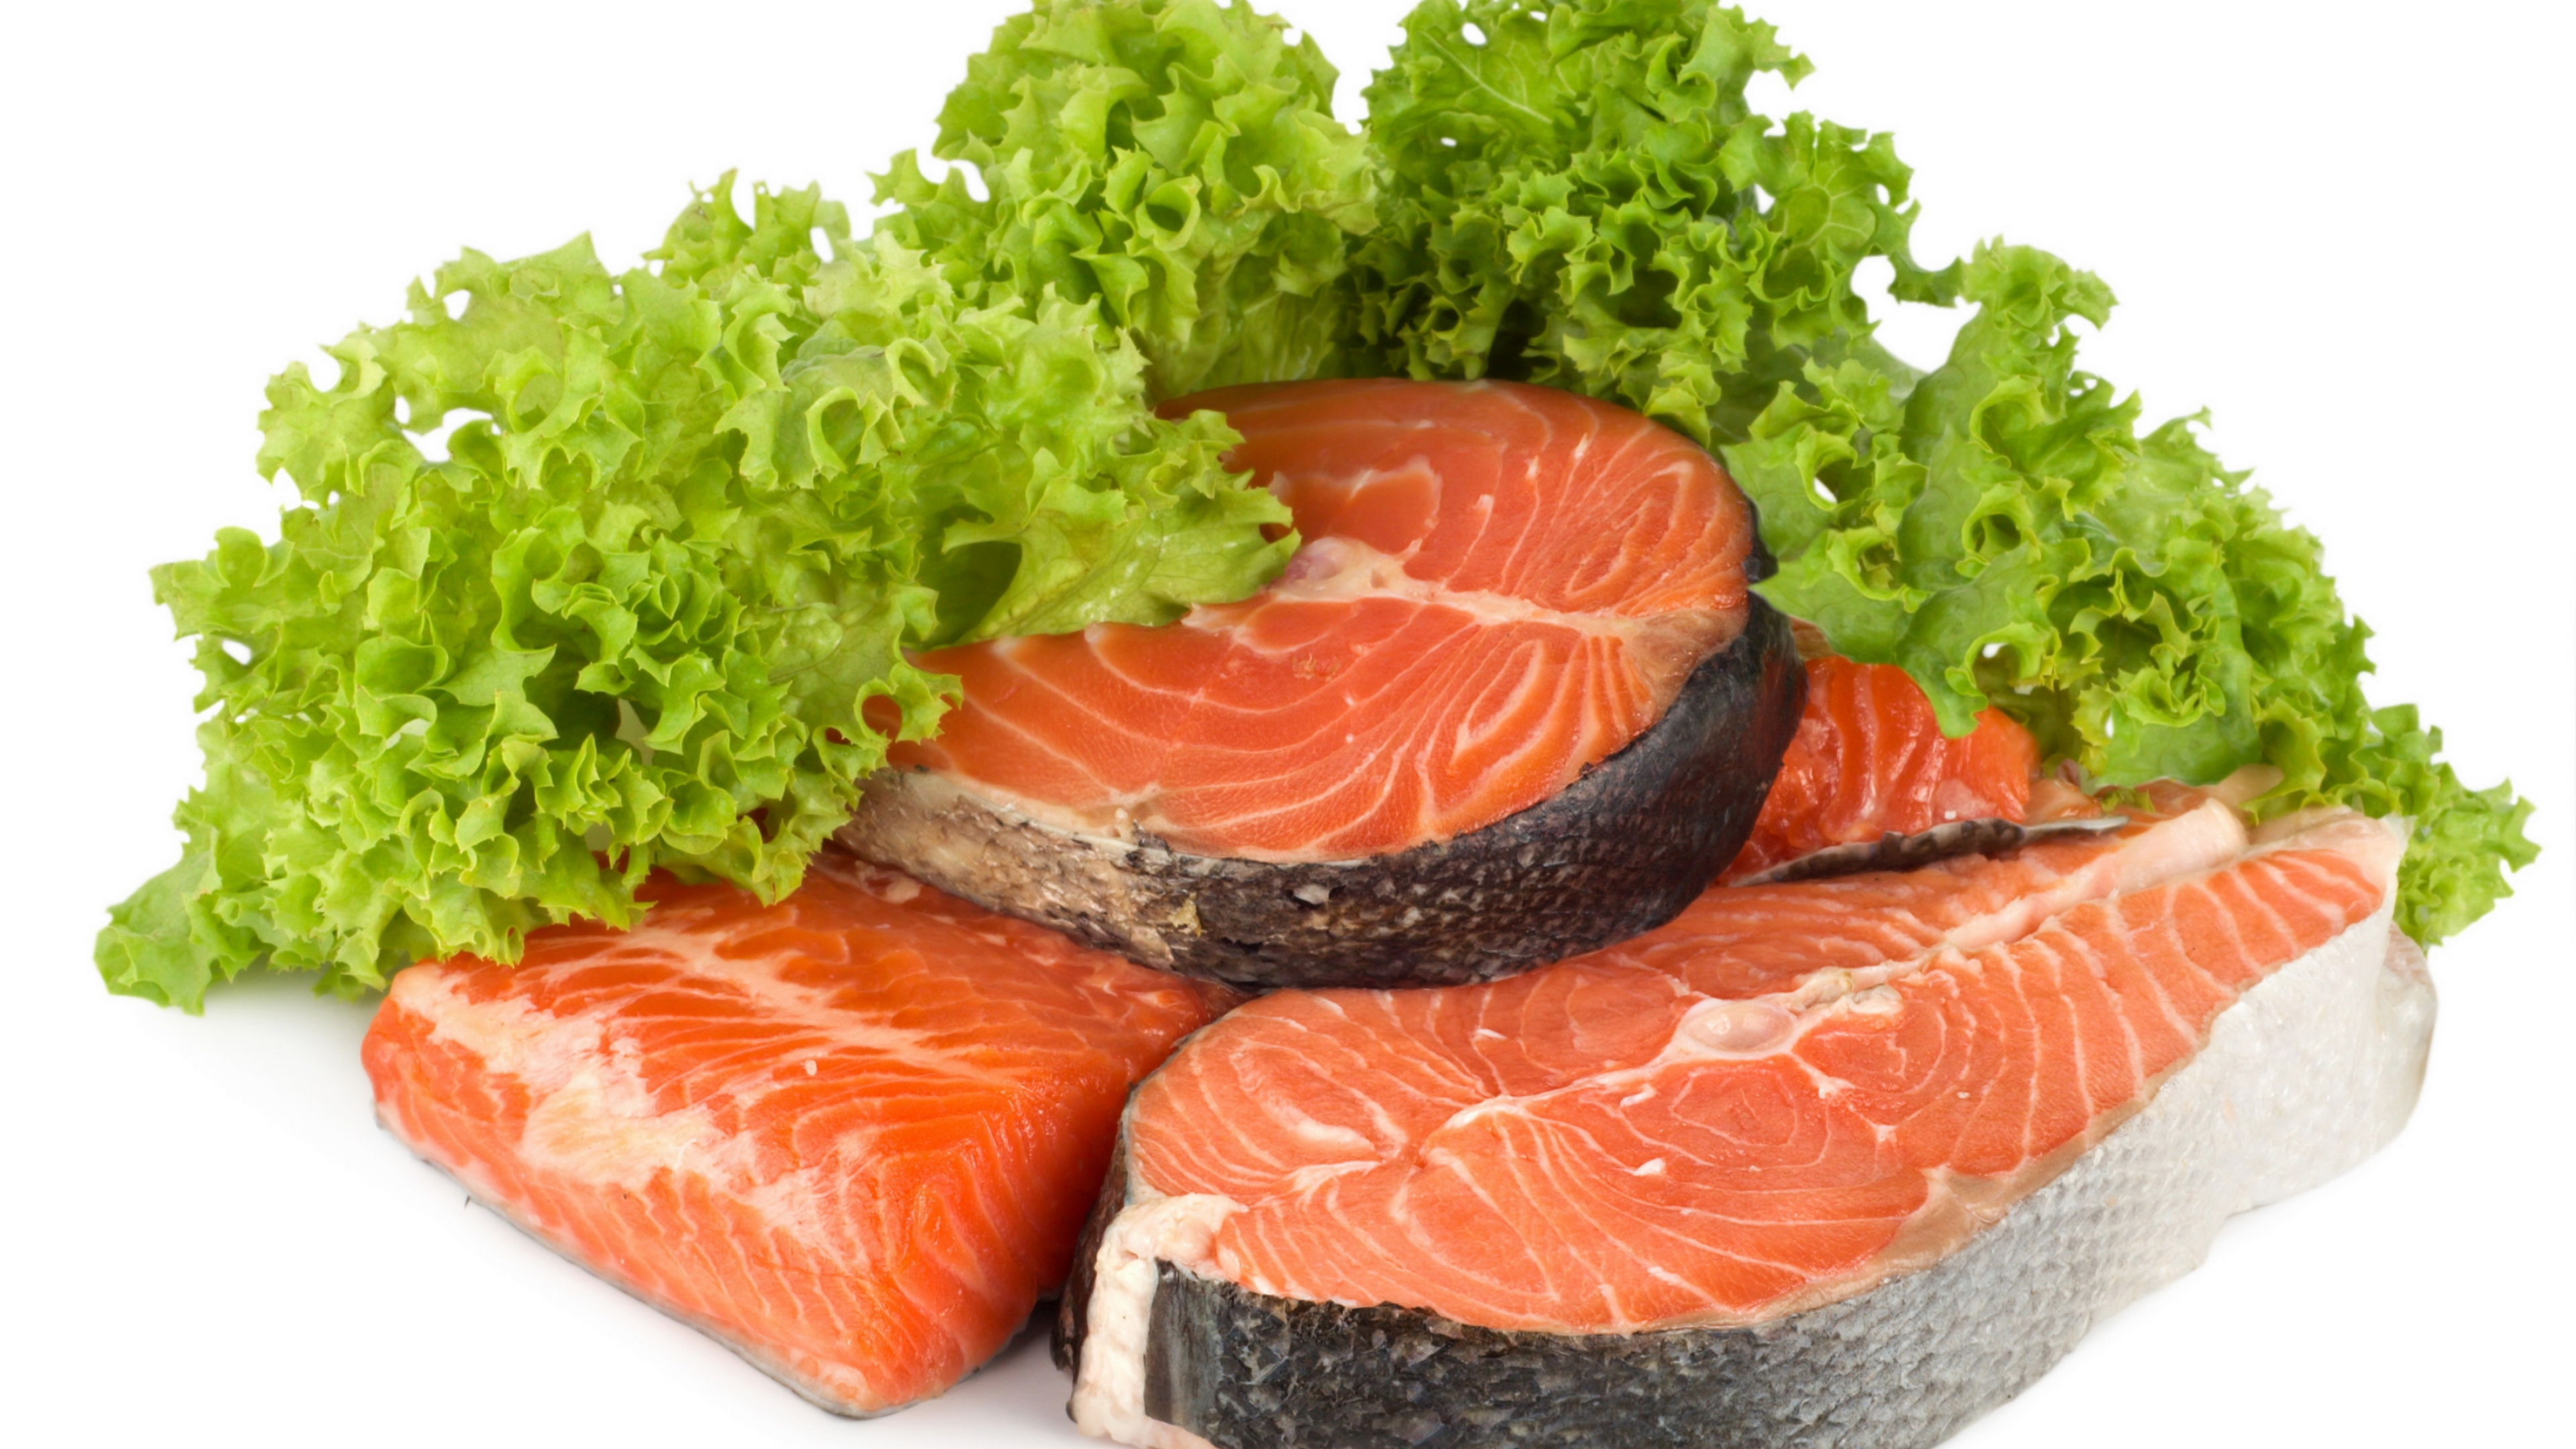 Fish product. Мясо рыба. Рыба еда. Мясные и рыбные продукты. Морепродукты на белом фоне.